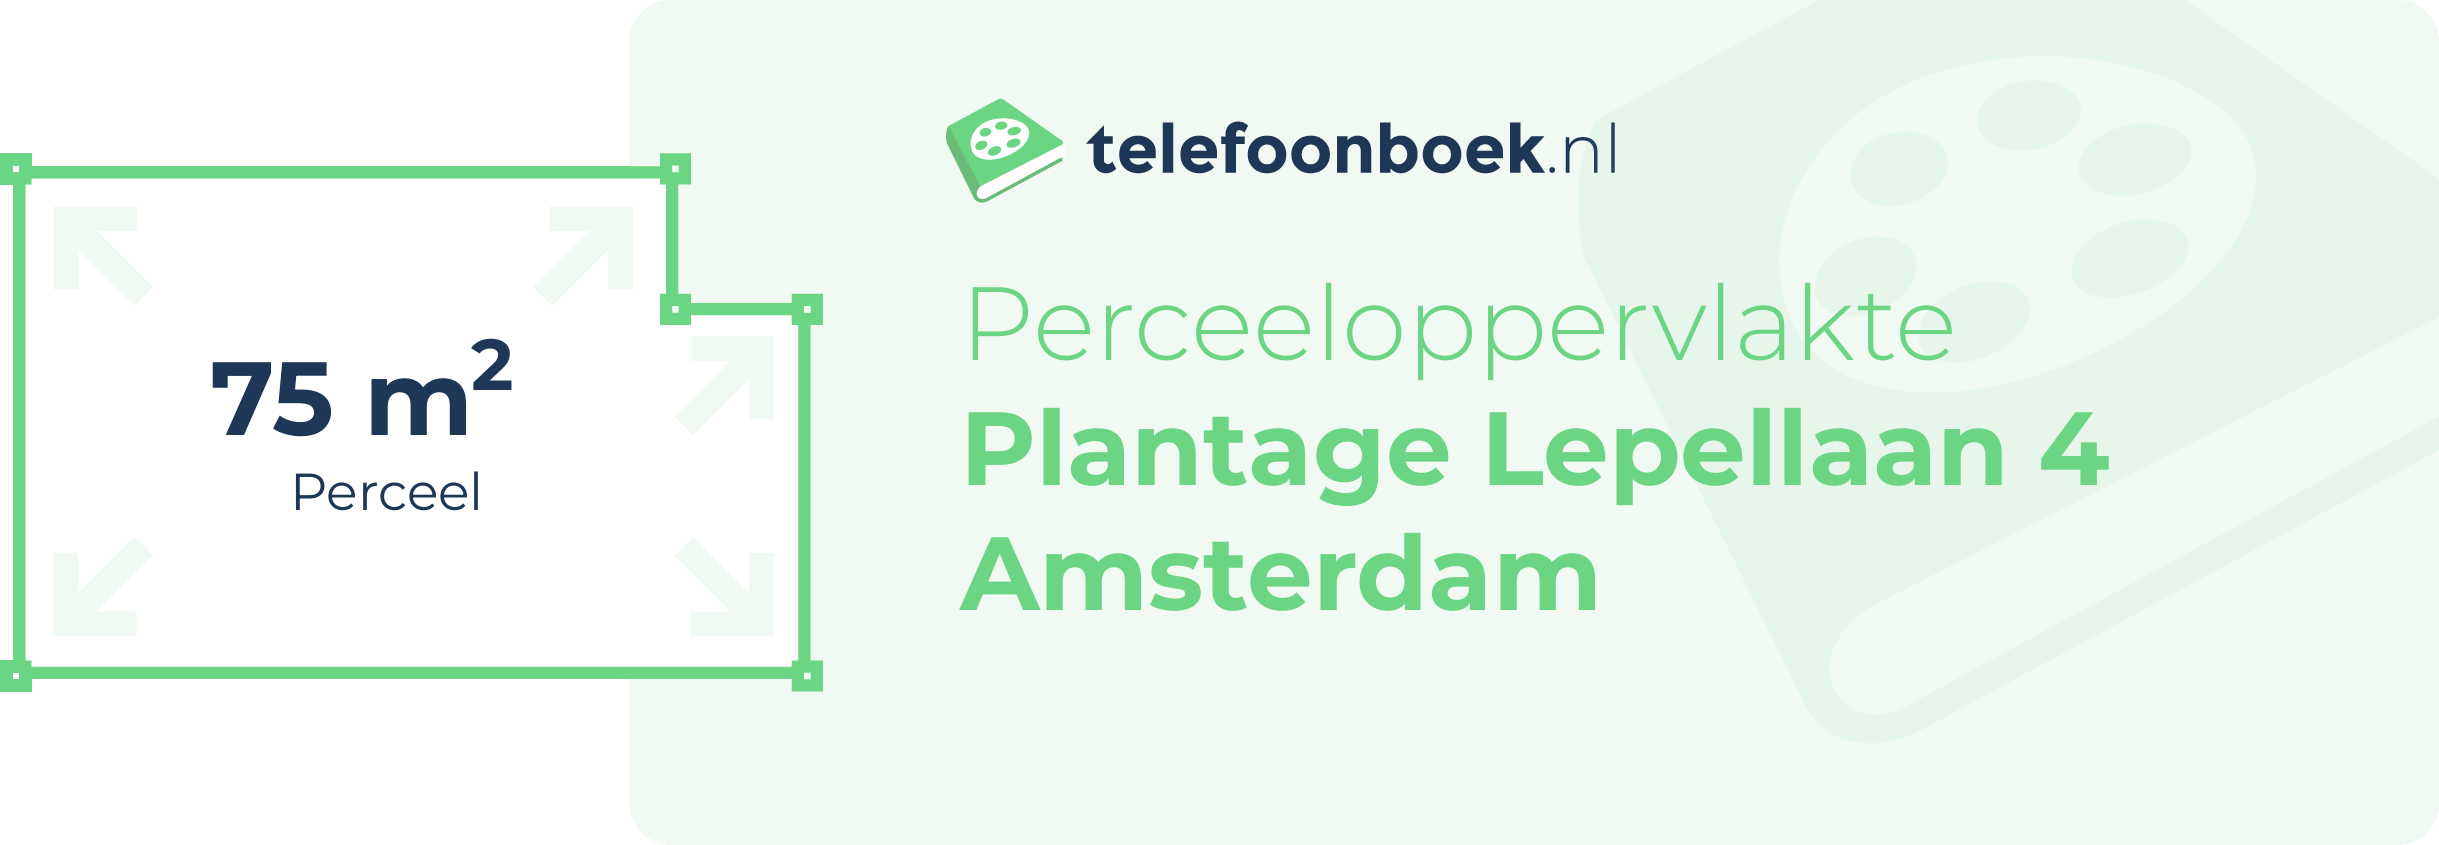 Perceeloppervlakte Plantage Lepellaan 4 Amsterdam